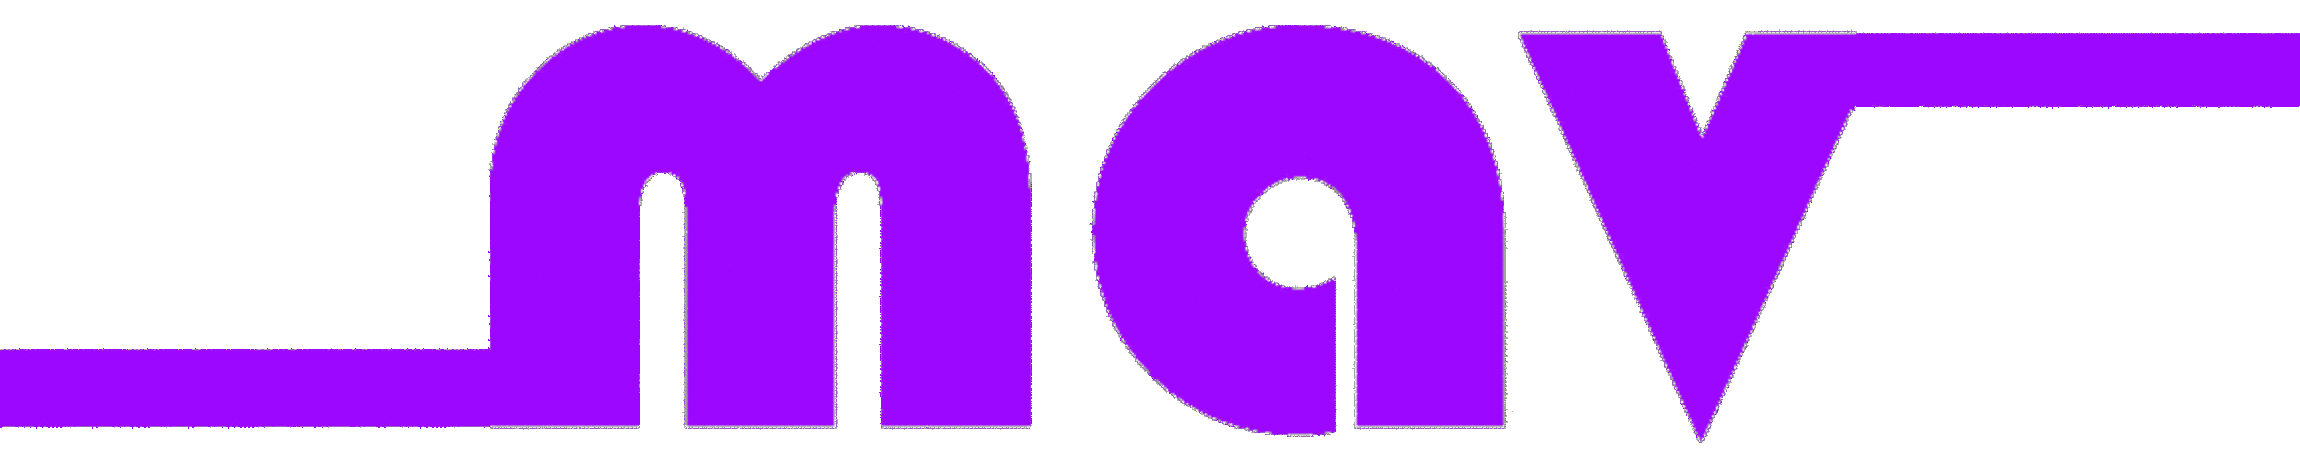 mav-violett-kurz-o-slogan